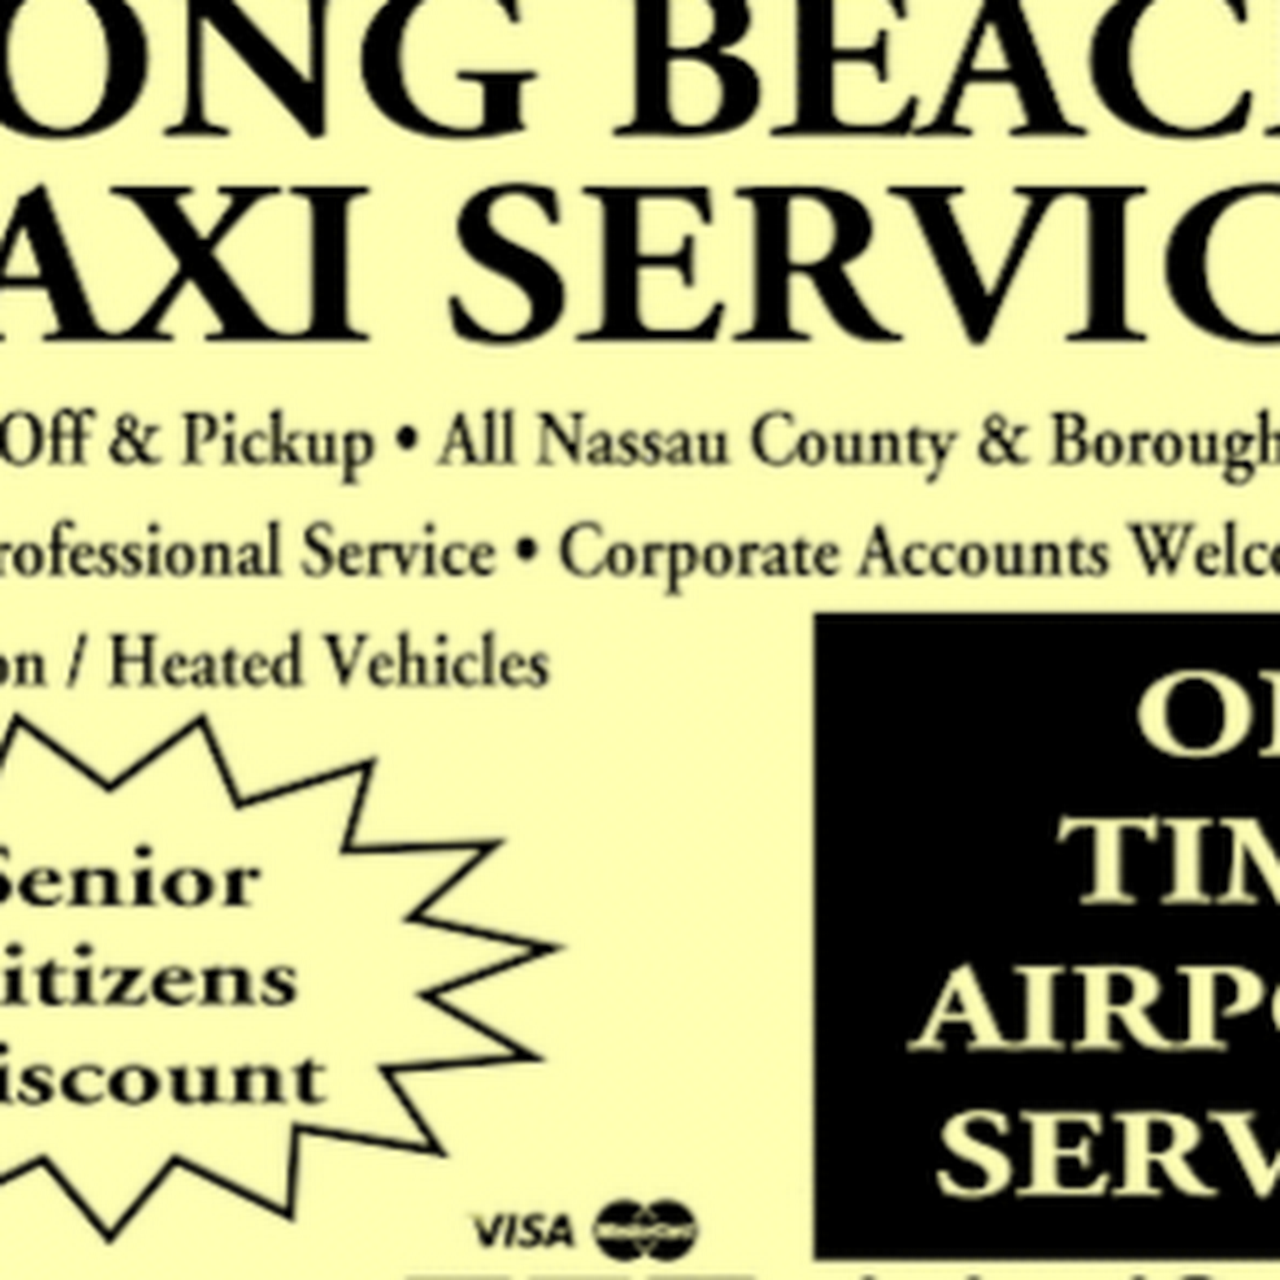 Company logo of Long Beach Taxi Service NY